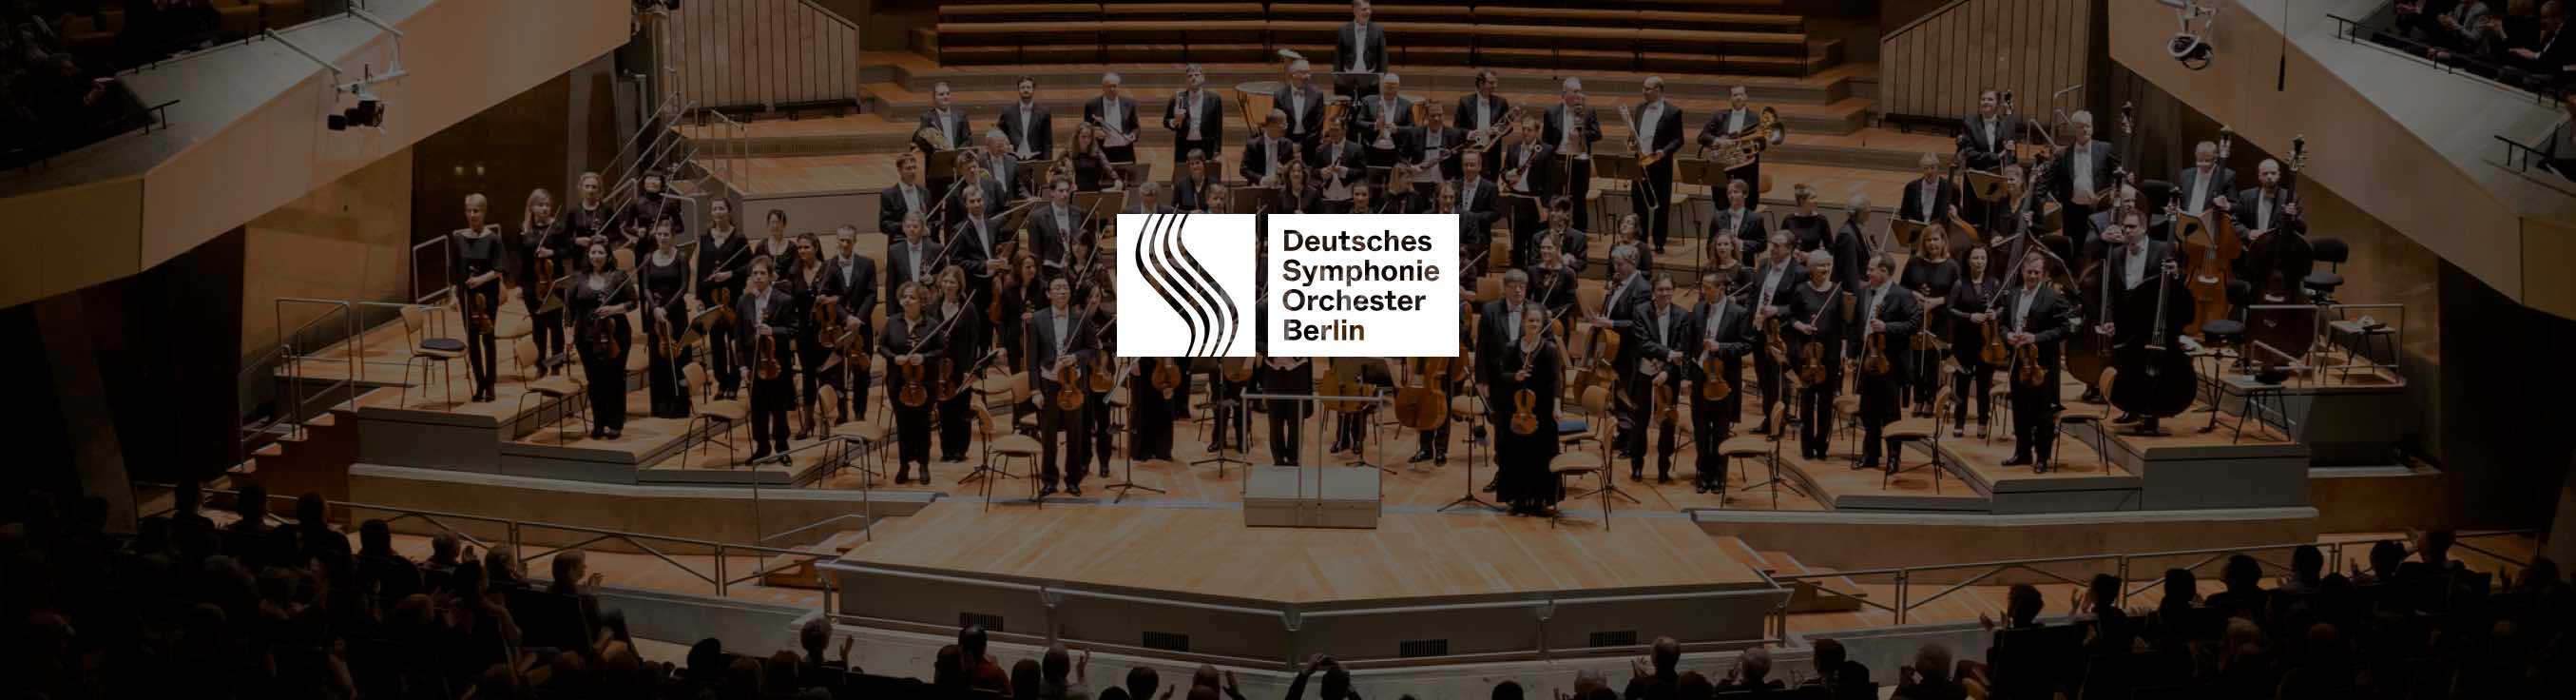 Deutsches Symphonieorchester at Philharmonie Berlin